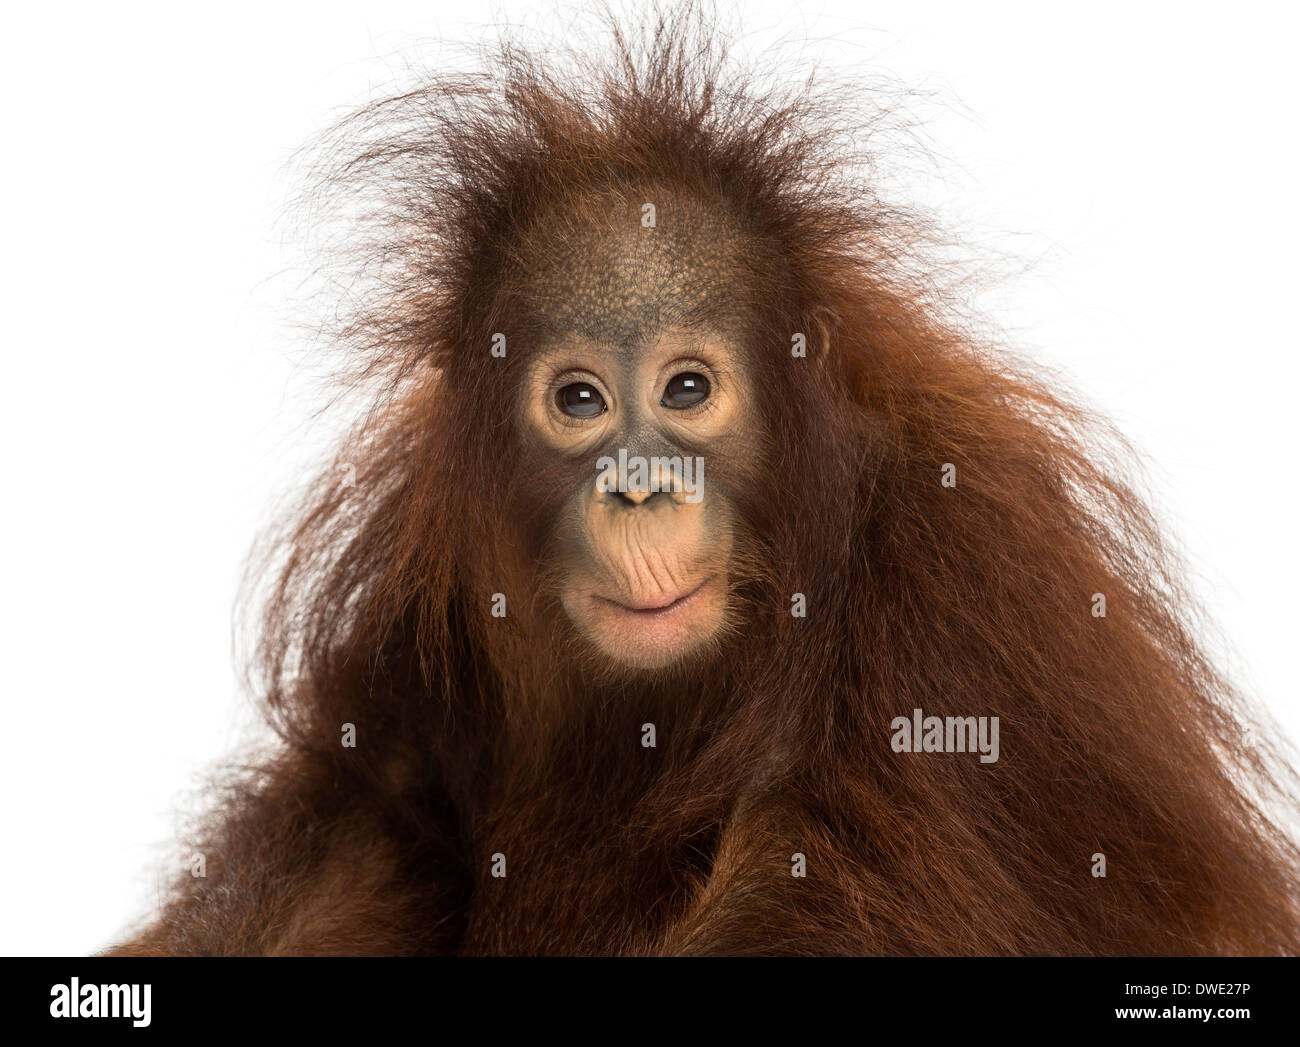 Giovani Bornean orangutan guardando la telecamera, pongo pygmaeus, 18 mesi di età, contro uno sfondo bianco Foto Stock